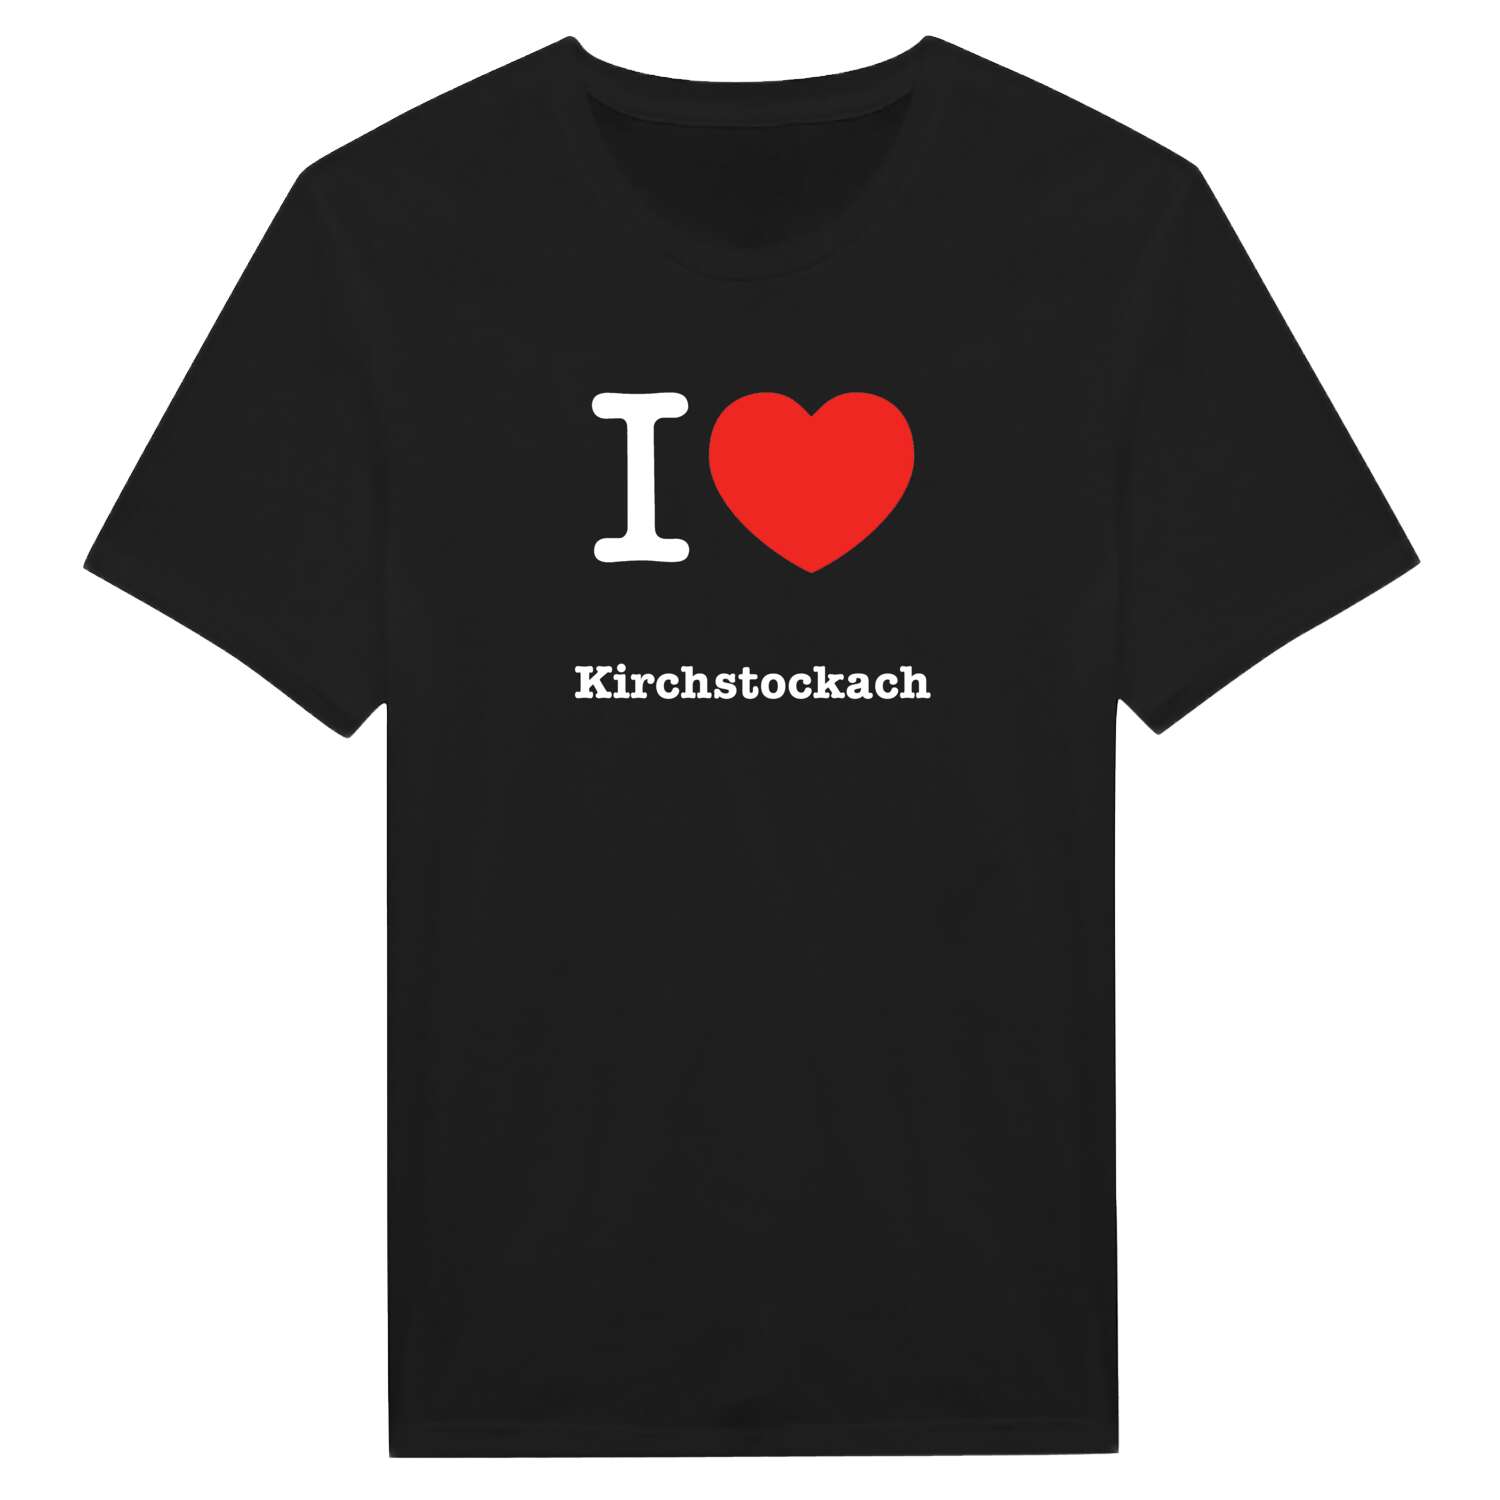 Kirchstockach T-Shirt »I love«